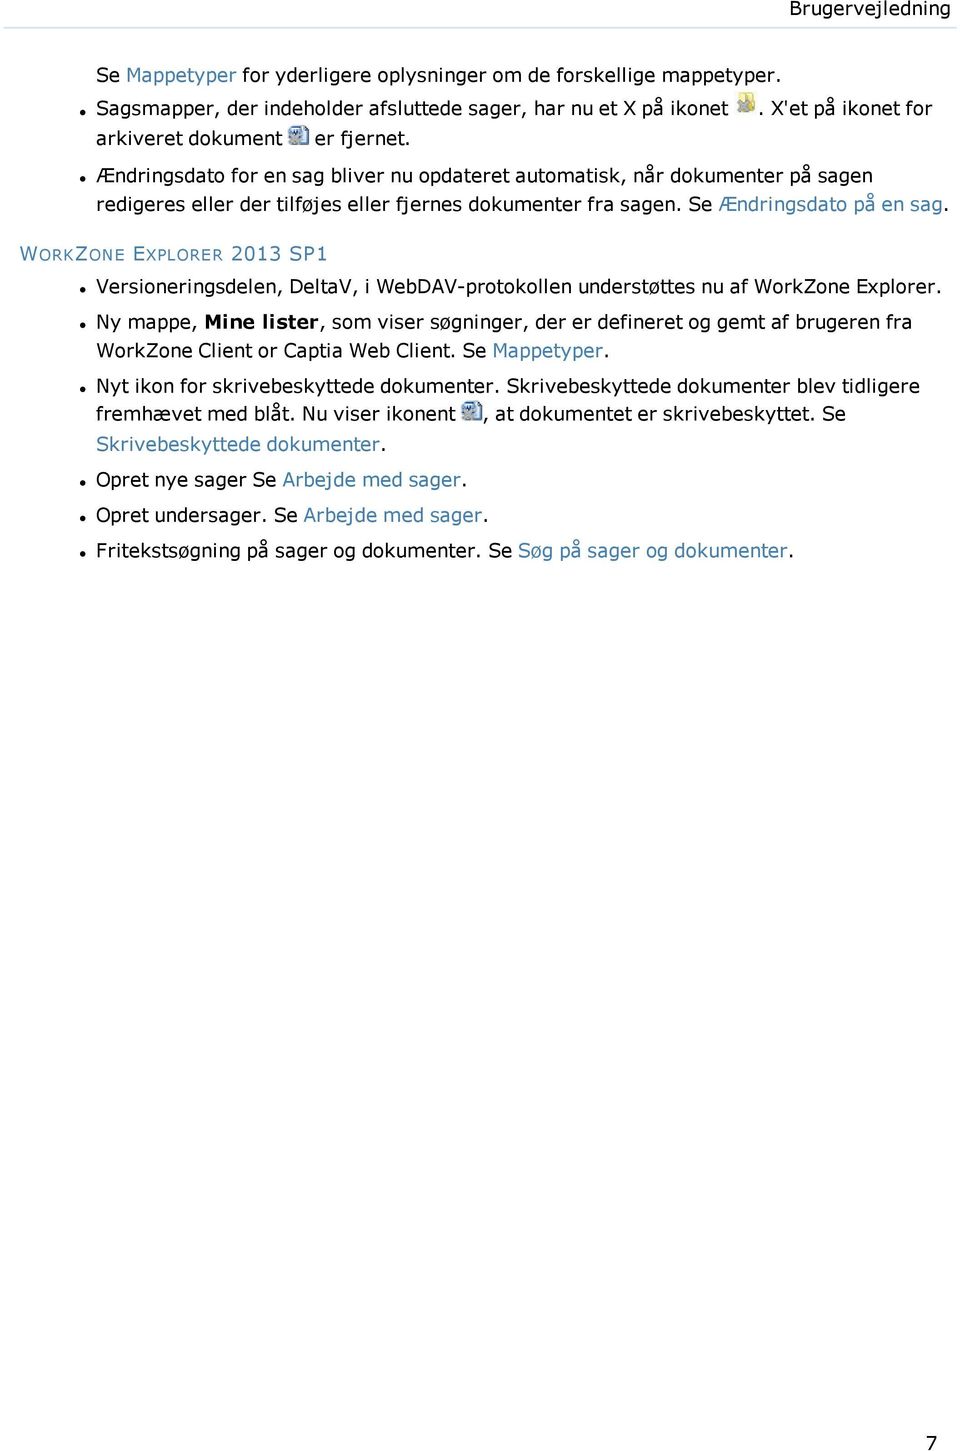 Se Ændringsdato på en sag. WORKZONE EXPLORER 2013 SP1 Versioneringsdelen, DeltaV, i WebDAV-protokollen understøttes nu af WorkZone Explorer.